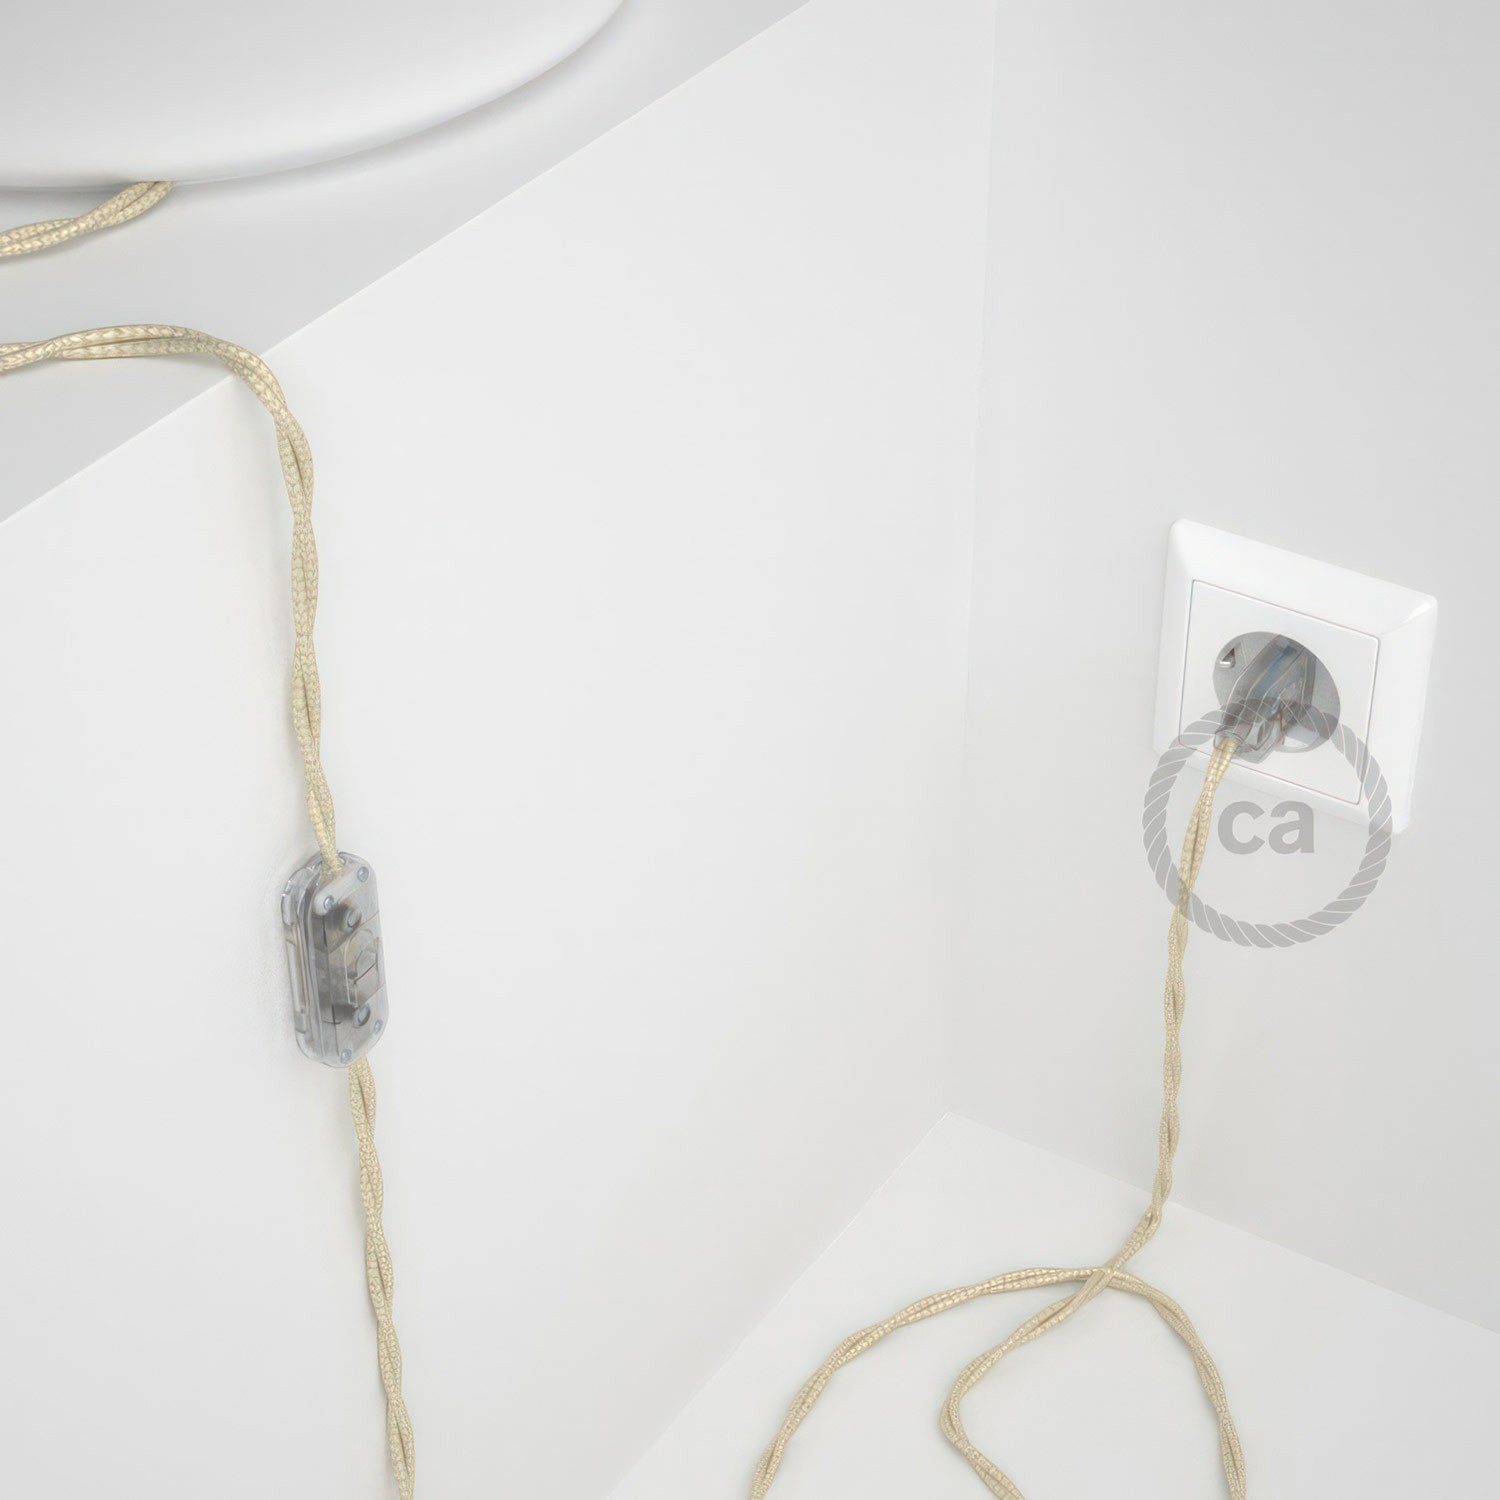 Cableado para lámpara, cable TM00 Efecto Seda Marfil 1,8m. Elige tu el color de la clavija y del interruptor!